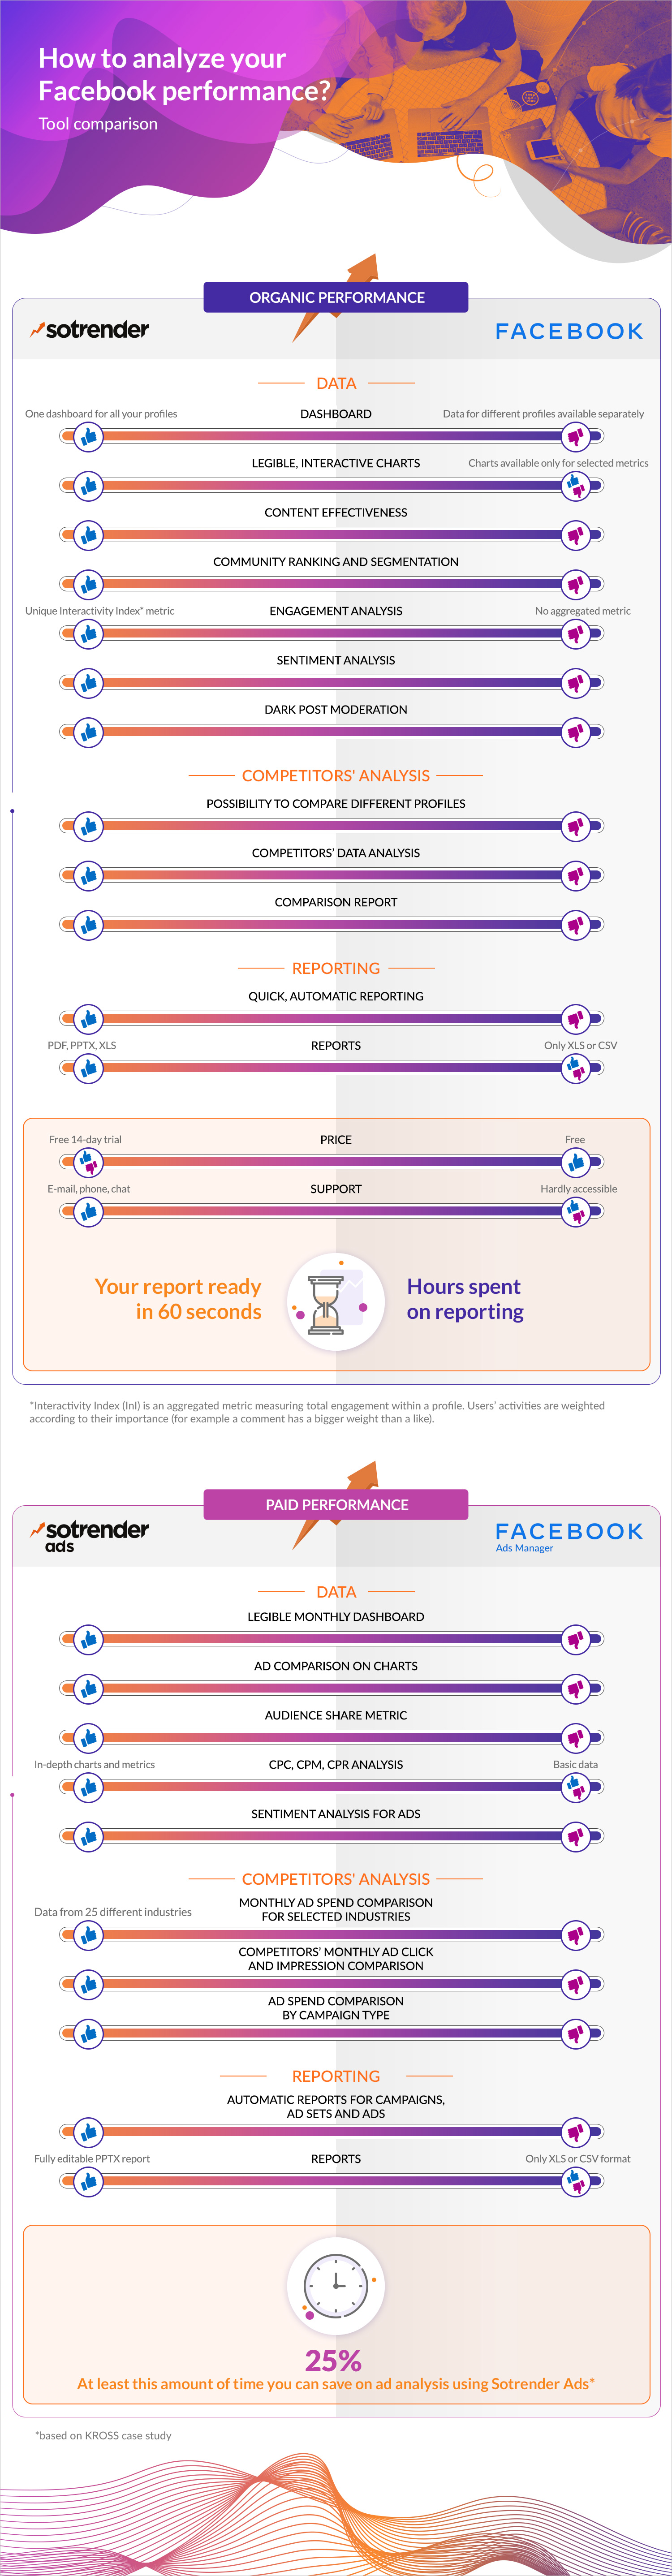 Sotrender vs Facebook Insights comparison